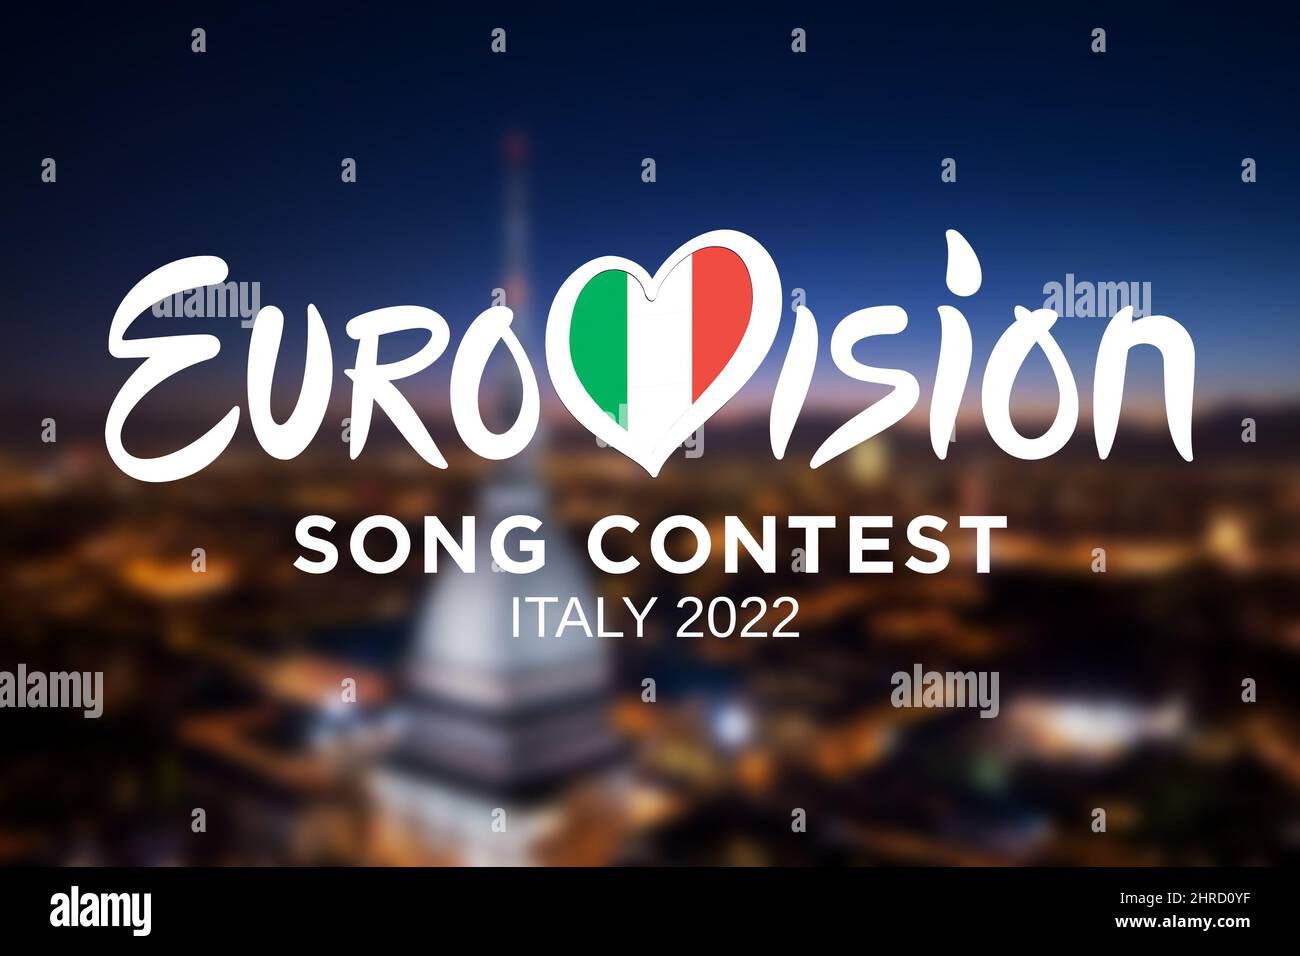 Logo du Concours Eurovision de la chanson sur le paysage urbain de Turin flou d'arrière-plan. L'édition 66th aura lieu à Turin en mai 2022. Turin, Italie - février 2 Banque D'Images